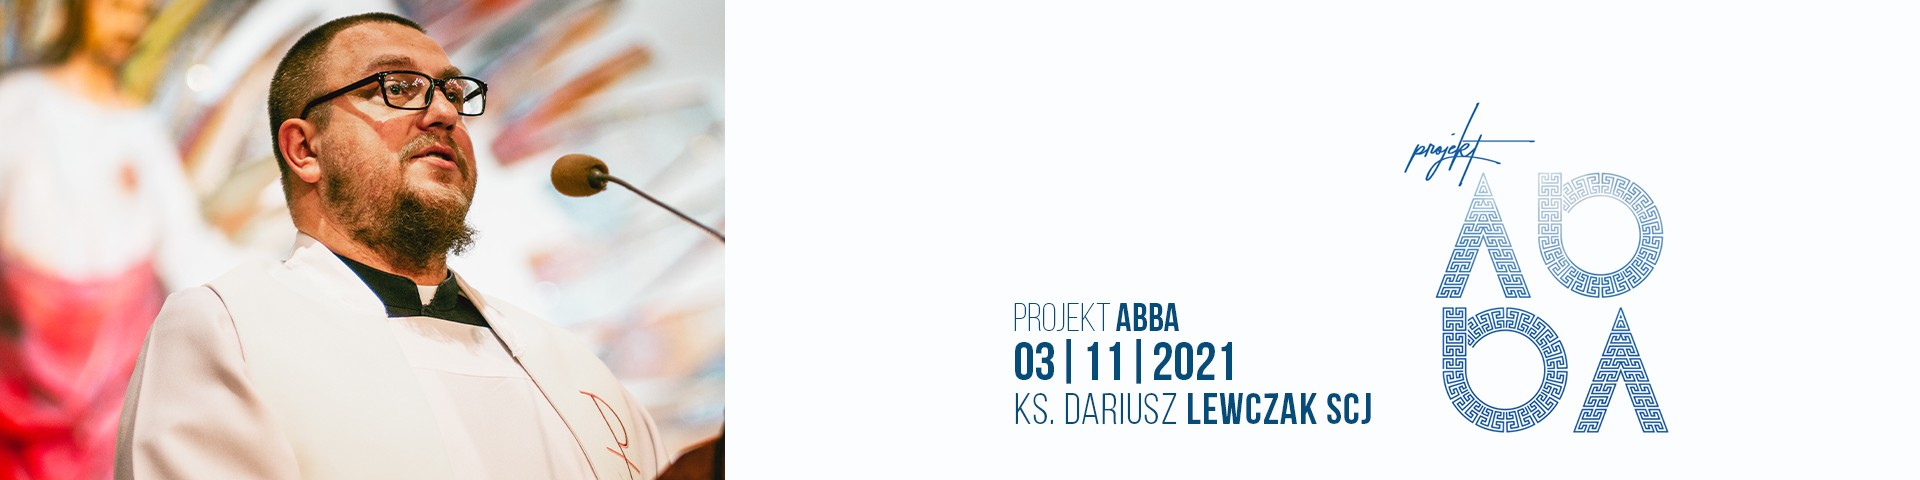 Projekt ABBA #2 – ks. Dariusz Lewczak SCJ – Z miłosnej relacji z Bogiem wyrasta miłość do człowieka